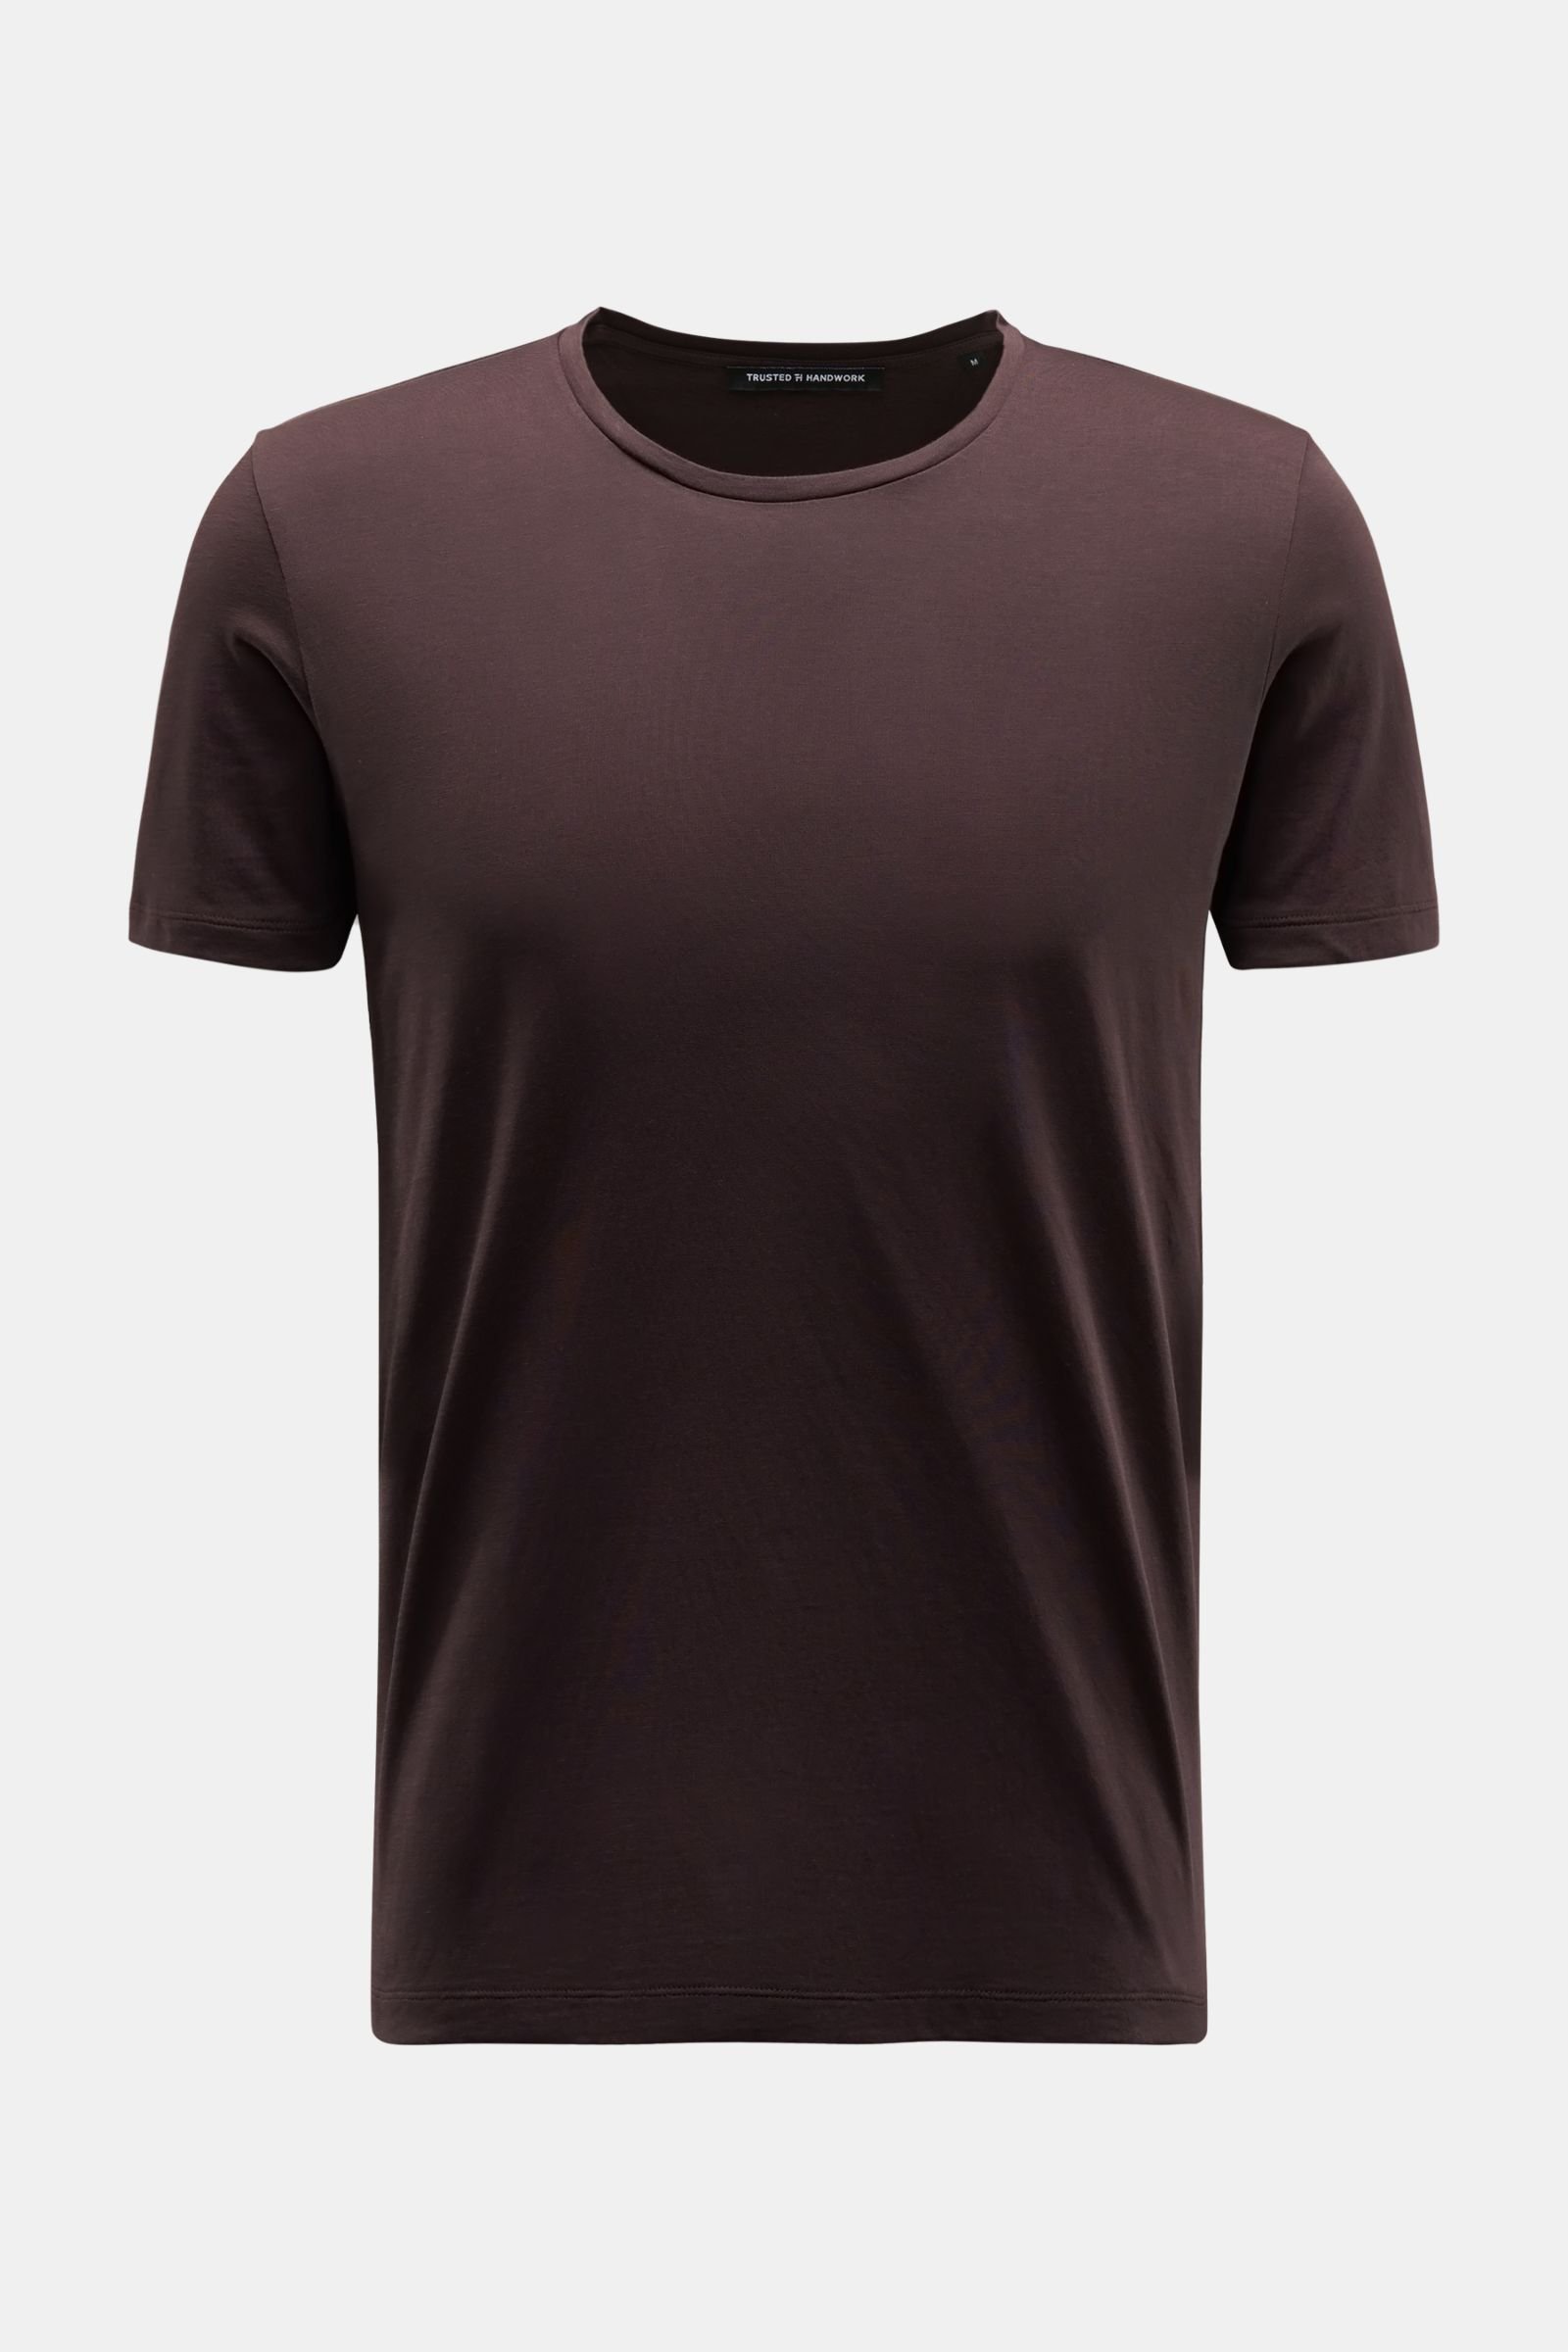 Crew neck T-shirt 'Washington' dark brown